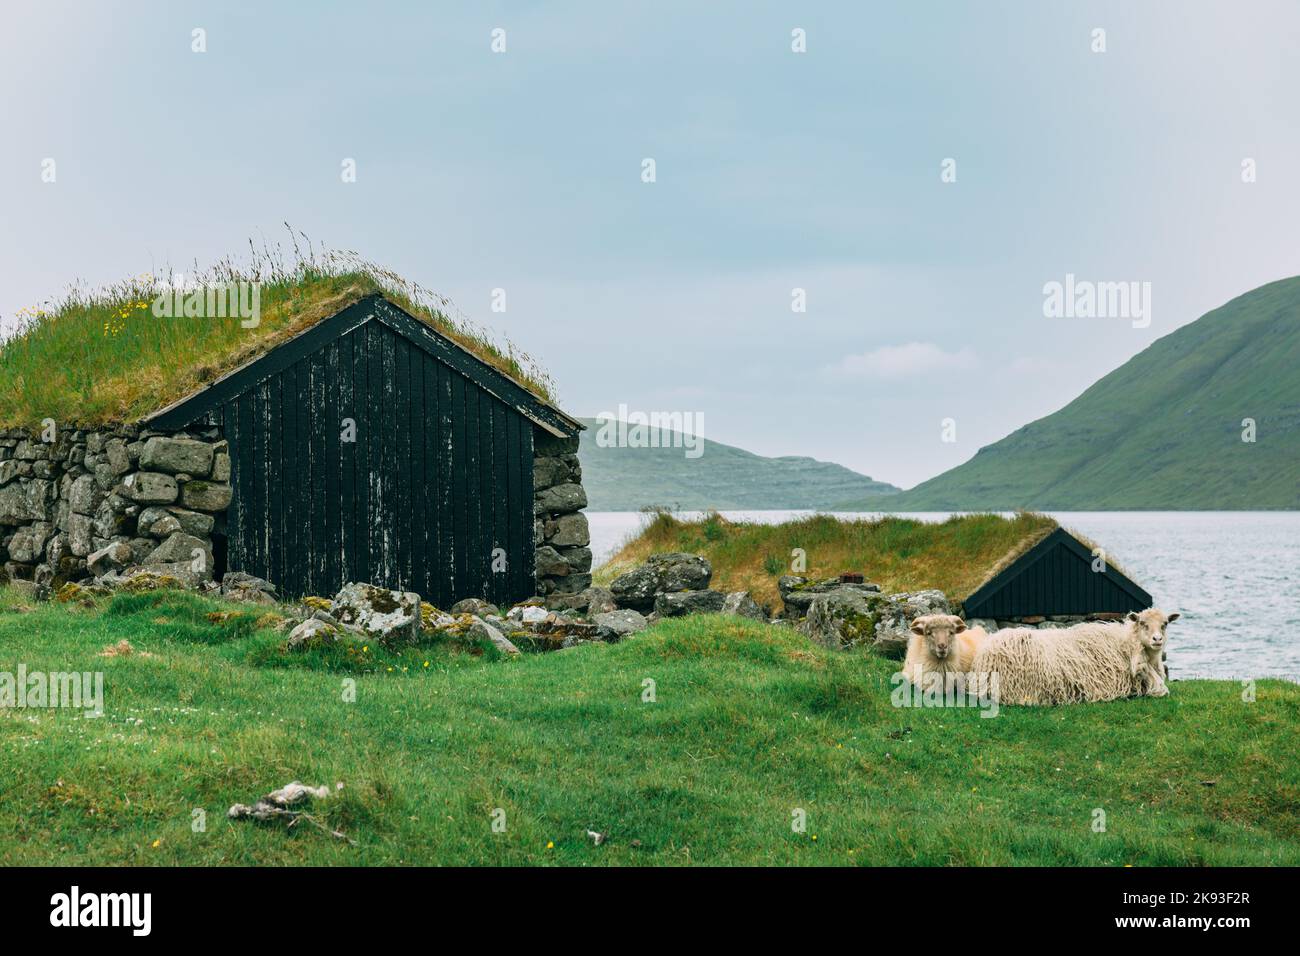 Färöer Inseln, Häuser mit Gras auf dem Dach Stockfoto